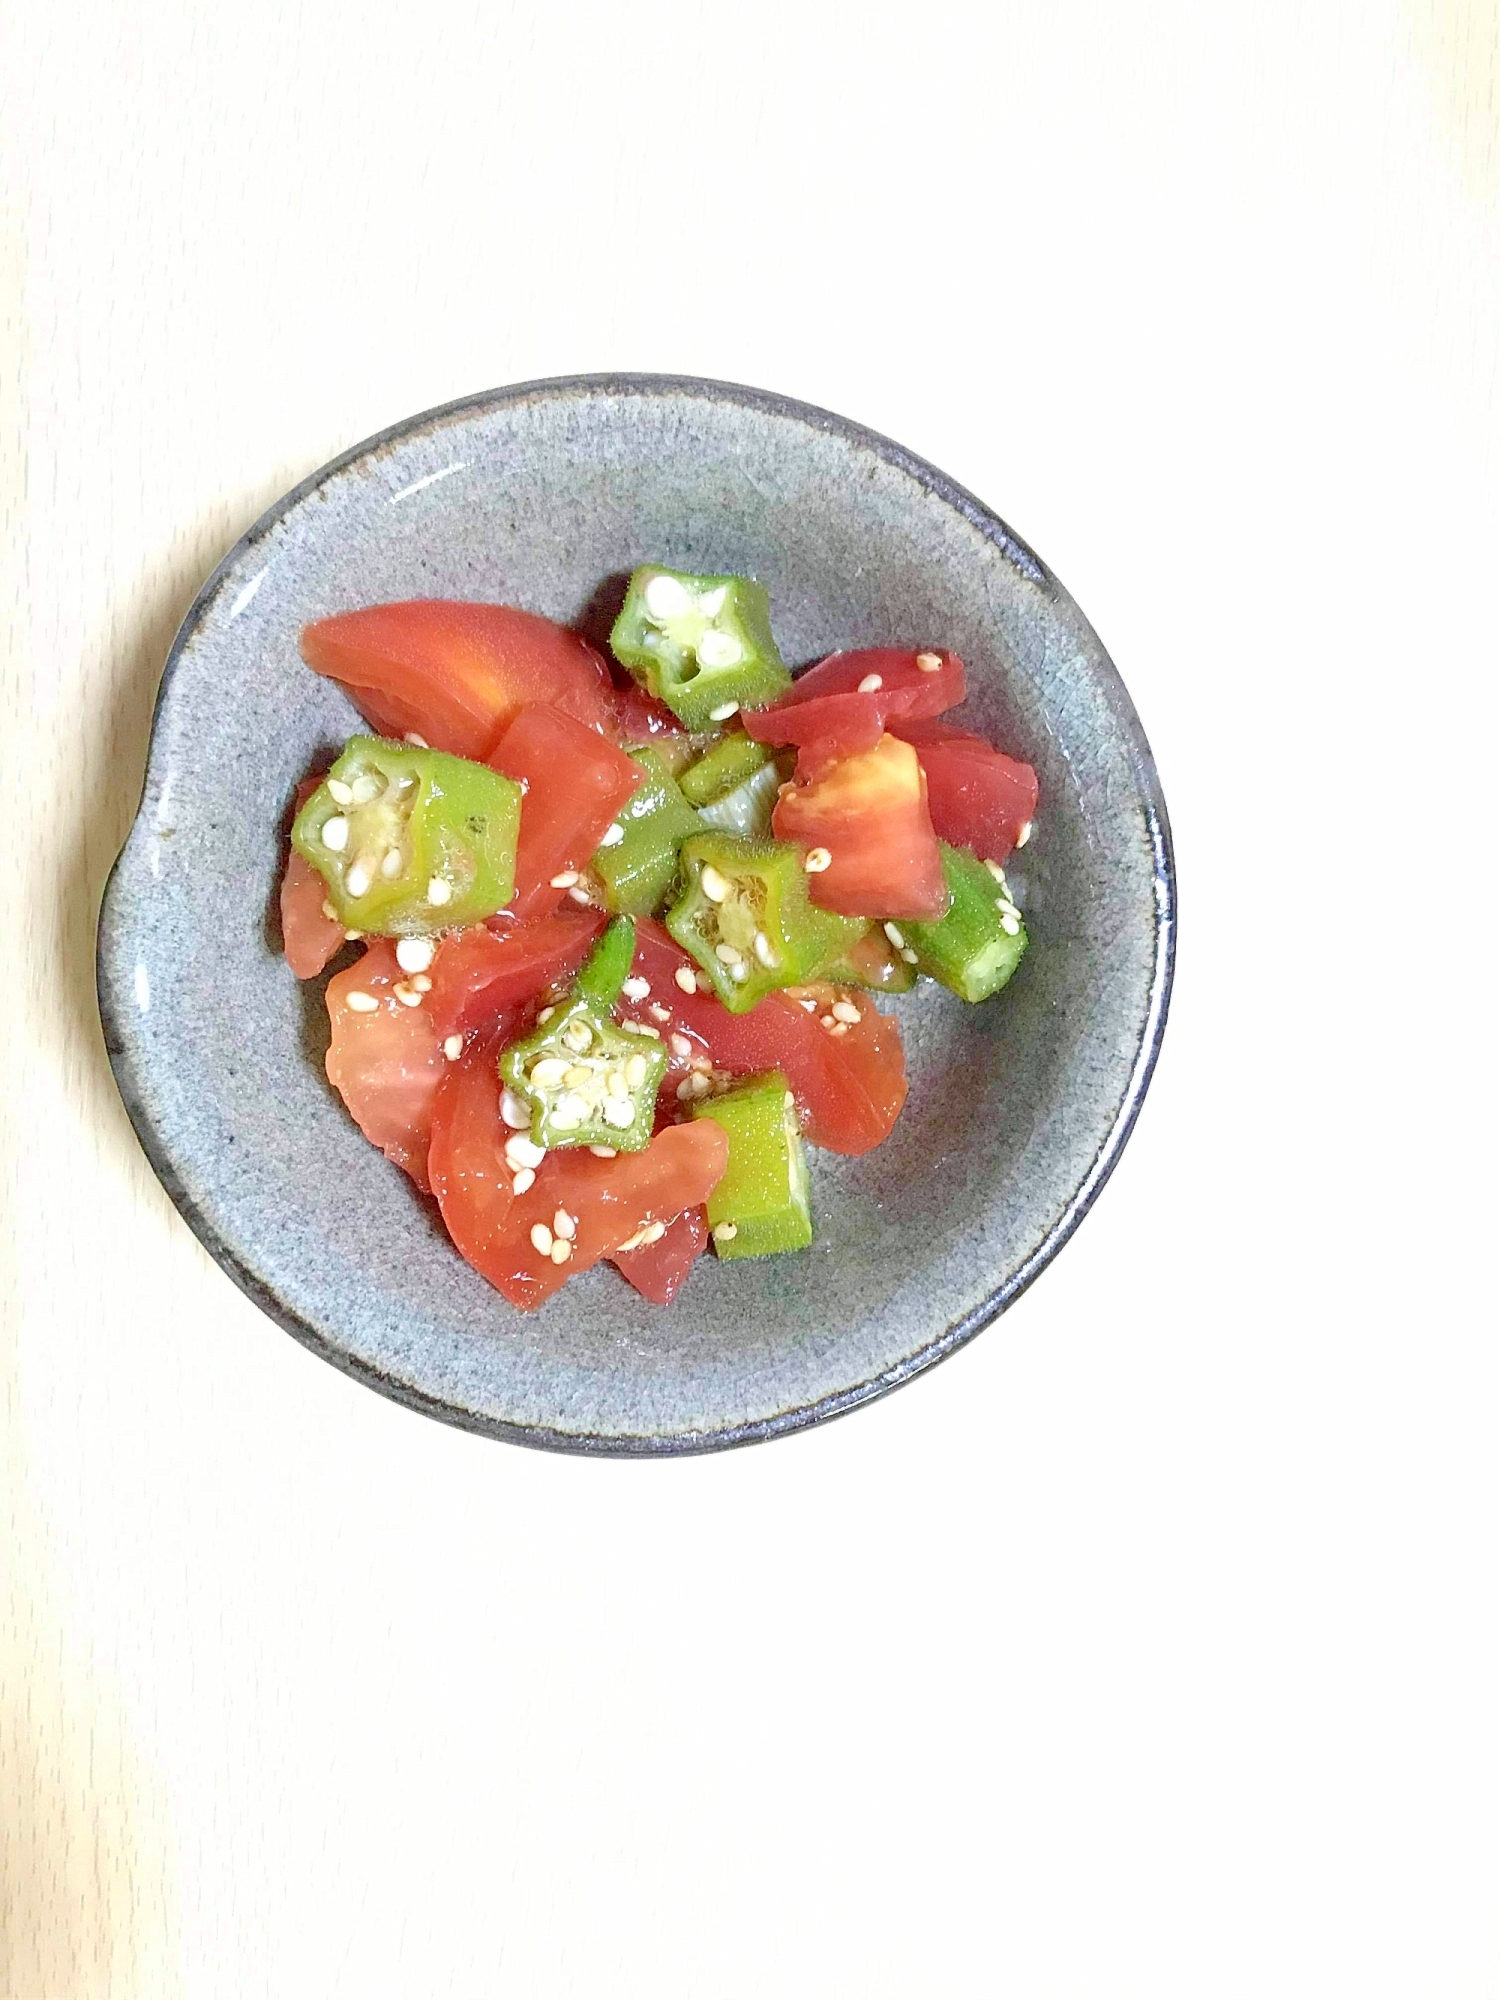 オクラとトマトの簡単サラダ